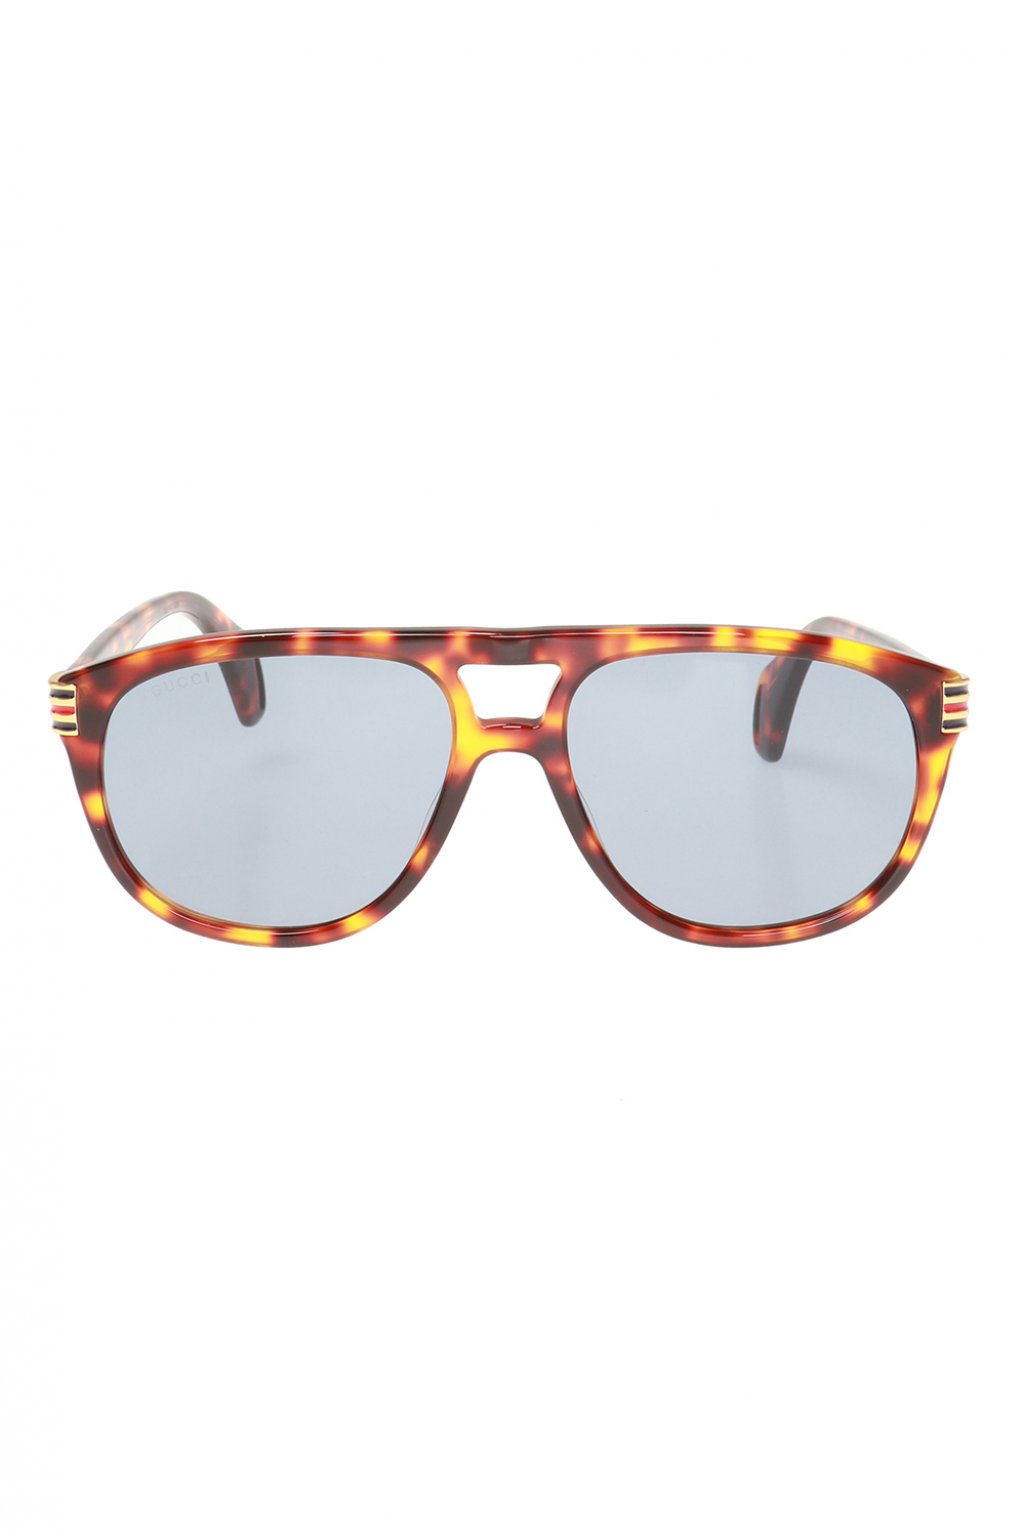 gucci web sunglasses